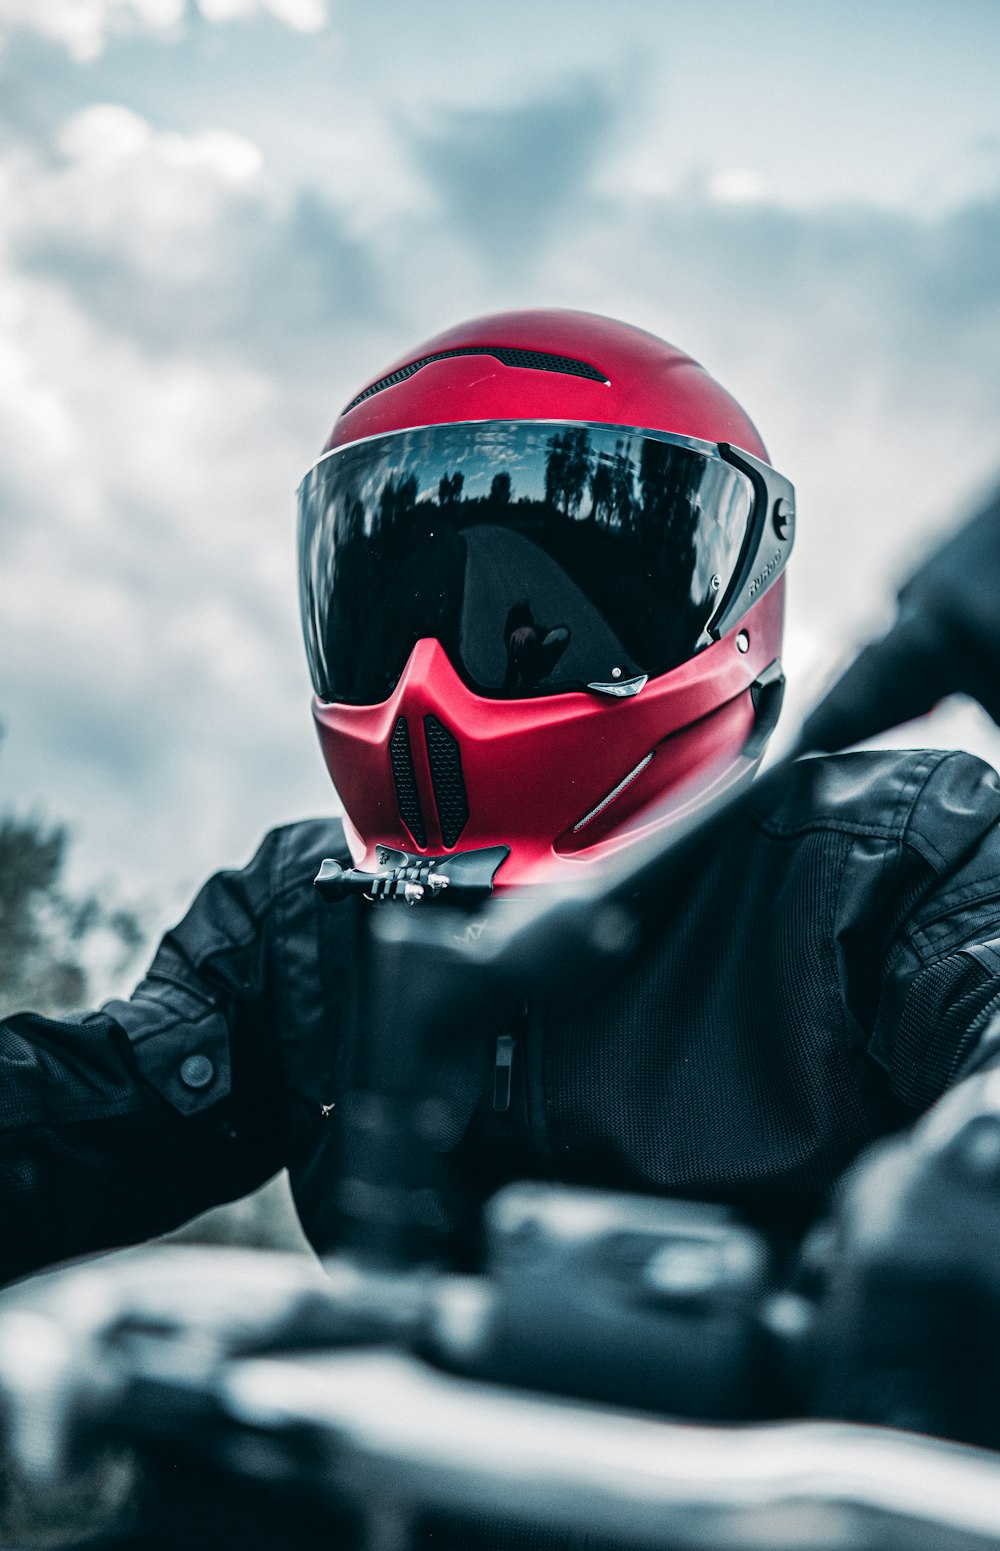 une personne portant un casque rouge et une veste noire assise sur une moto